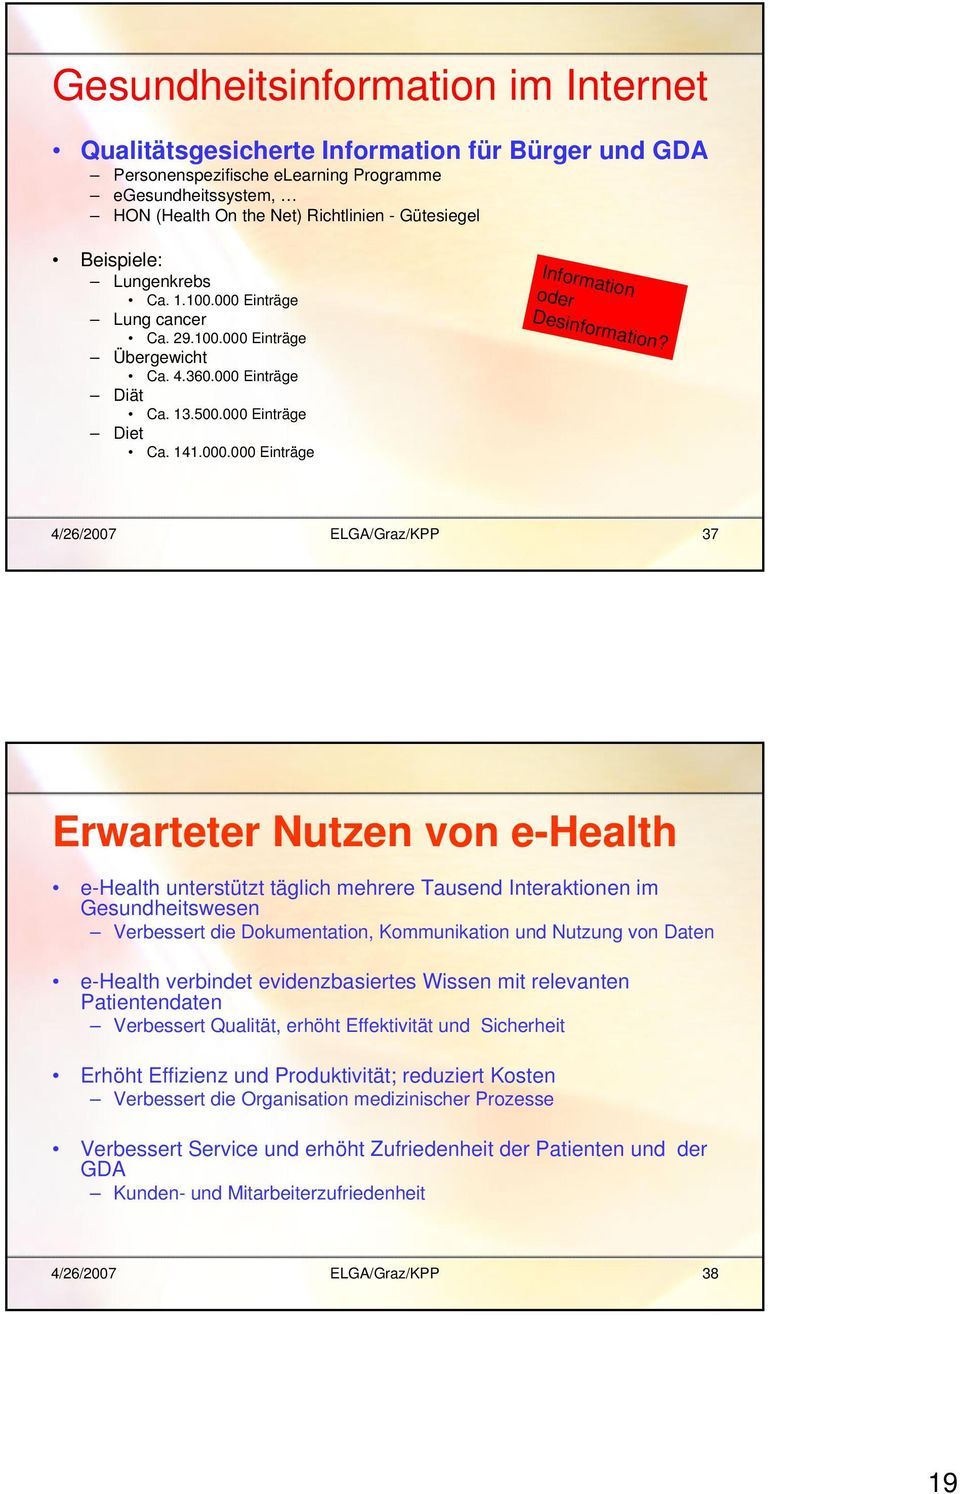 4/26/2007 ELGA/Graz/KPP 37 Erwarteter Nutzen von e-health e-health unterstützt täglich mehrere Tausend Interaktionen im Gesundheitswesen Verbessert die Dokumentation, Kommunikation und Nutzung von